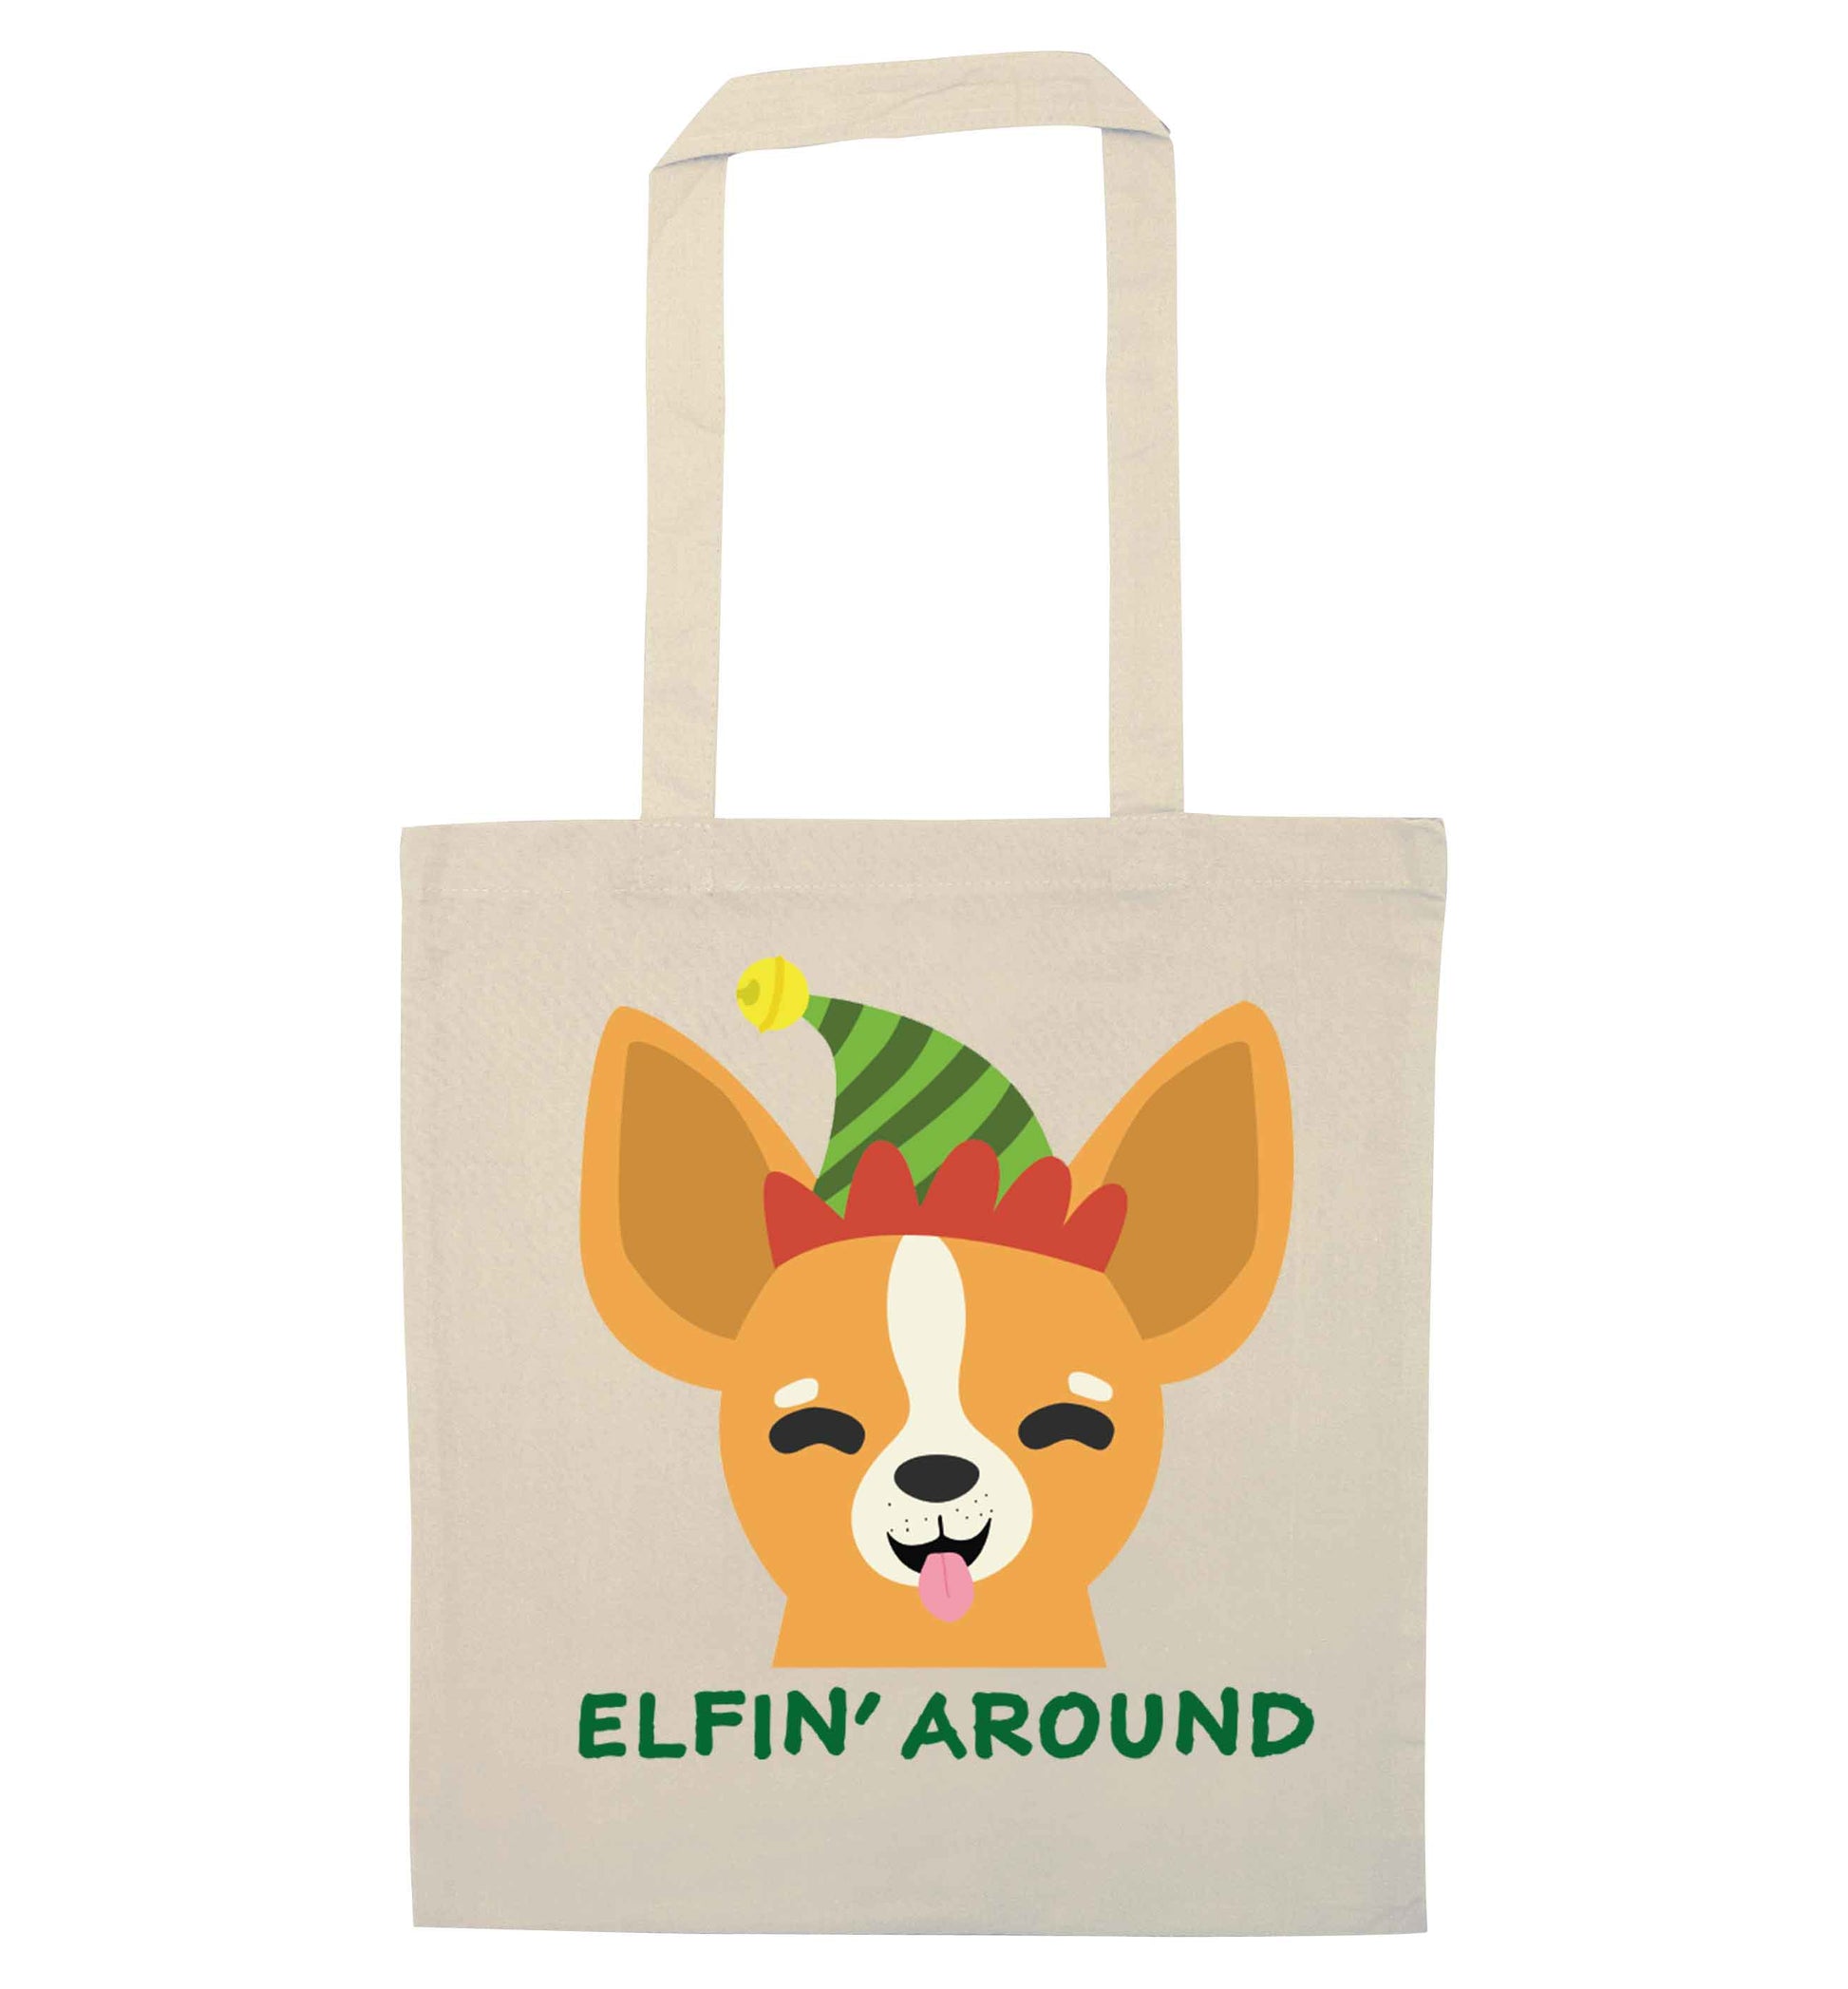 Elfin' around natural tote bag